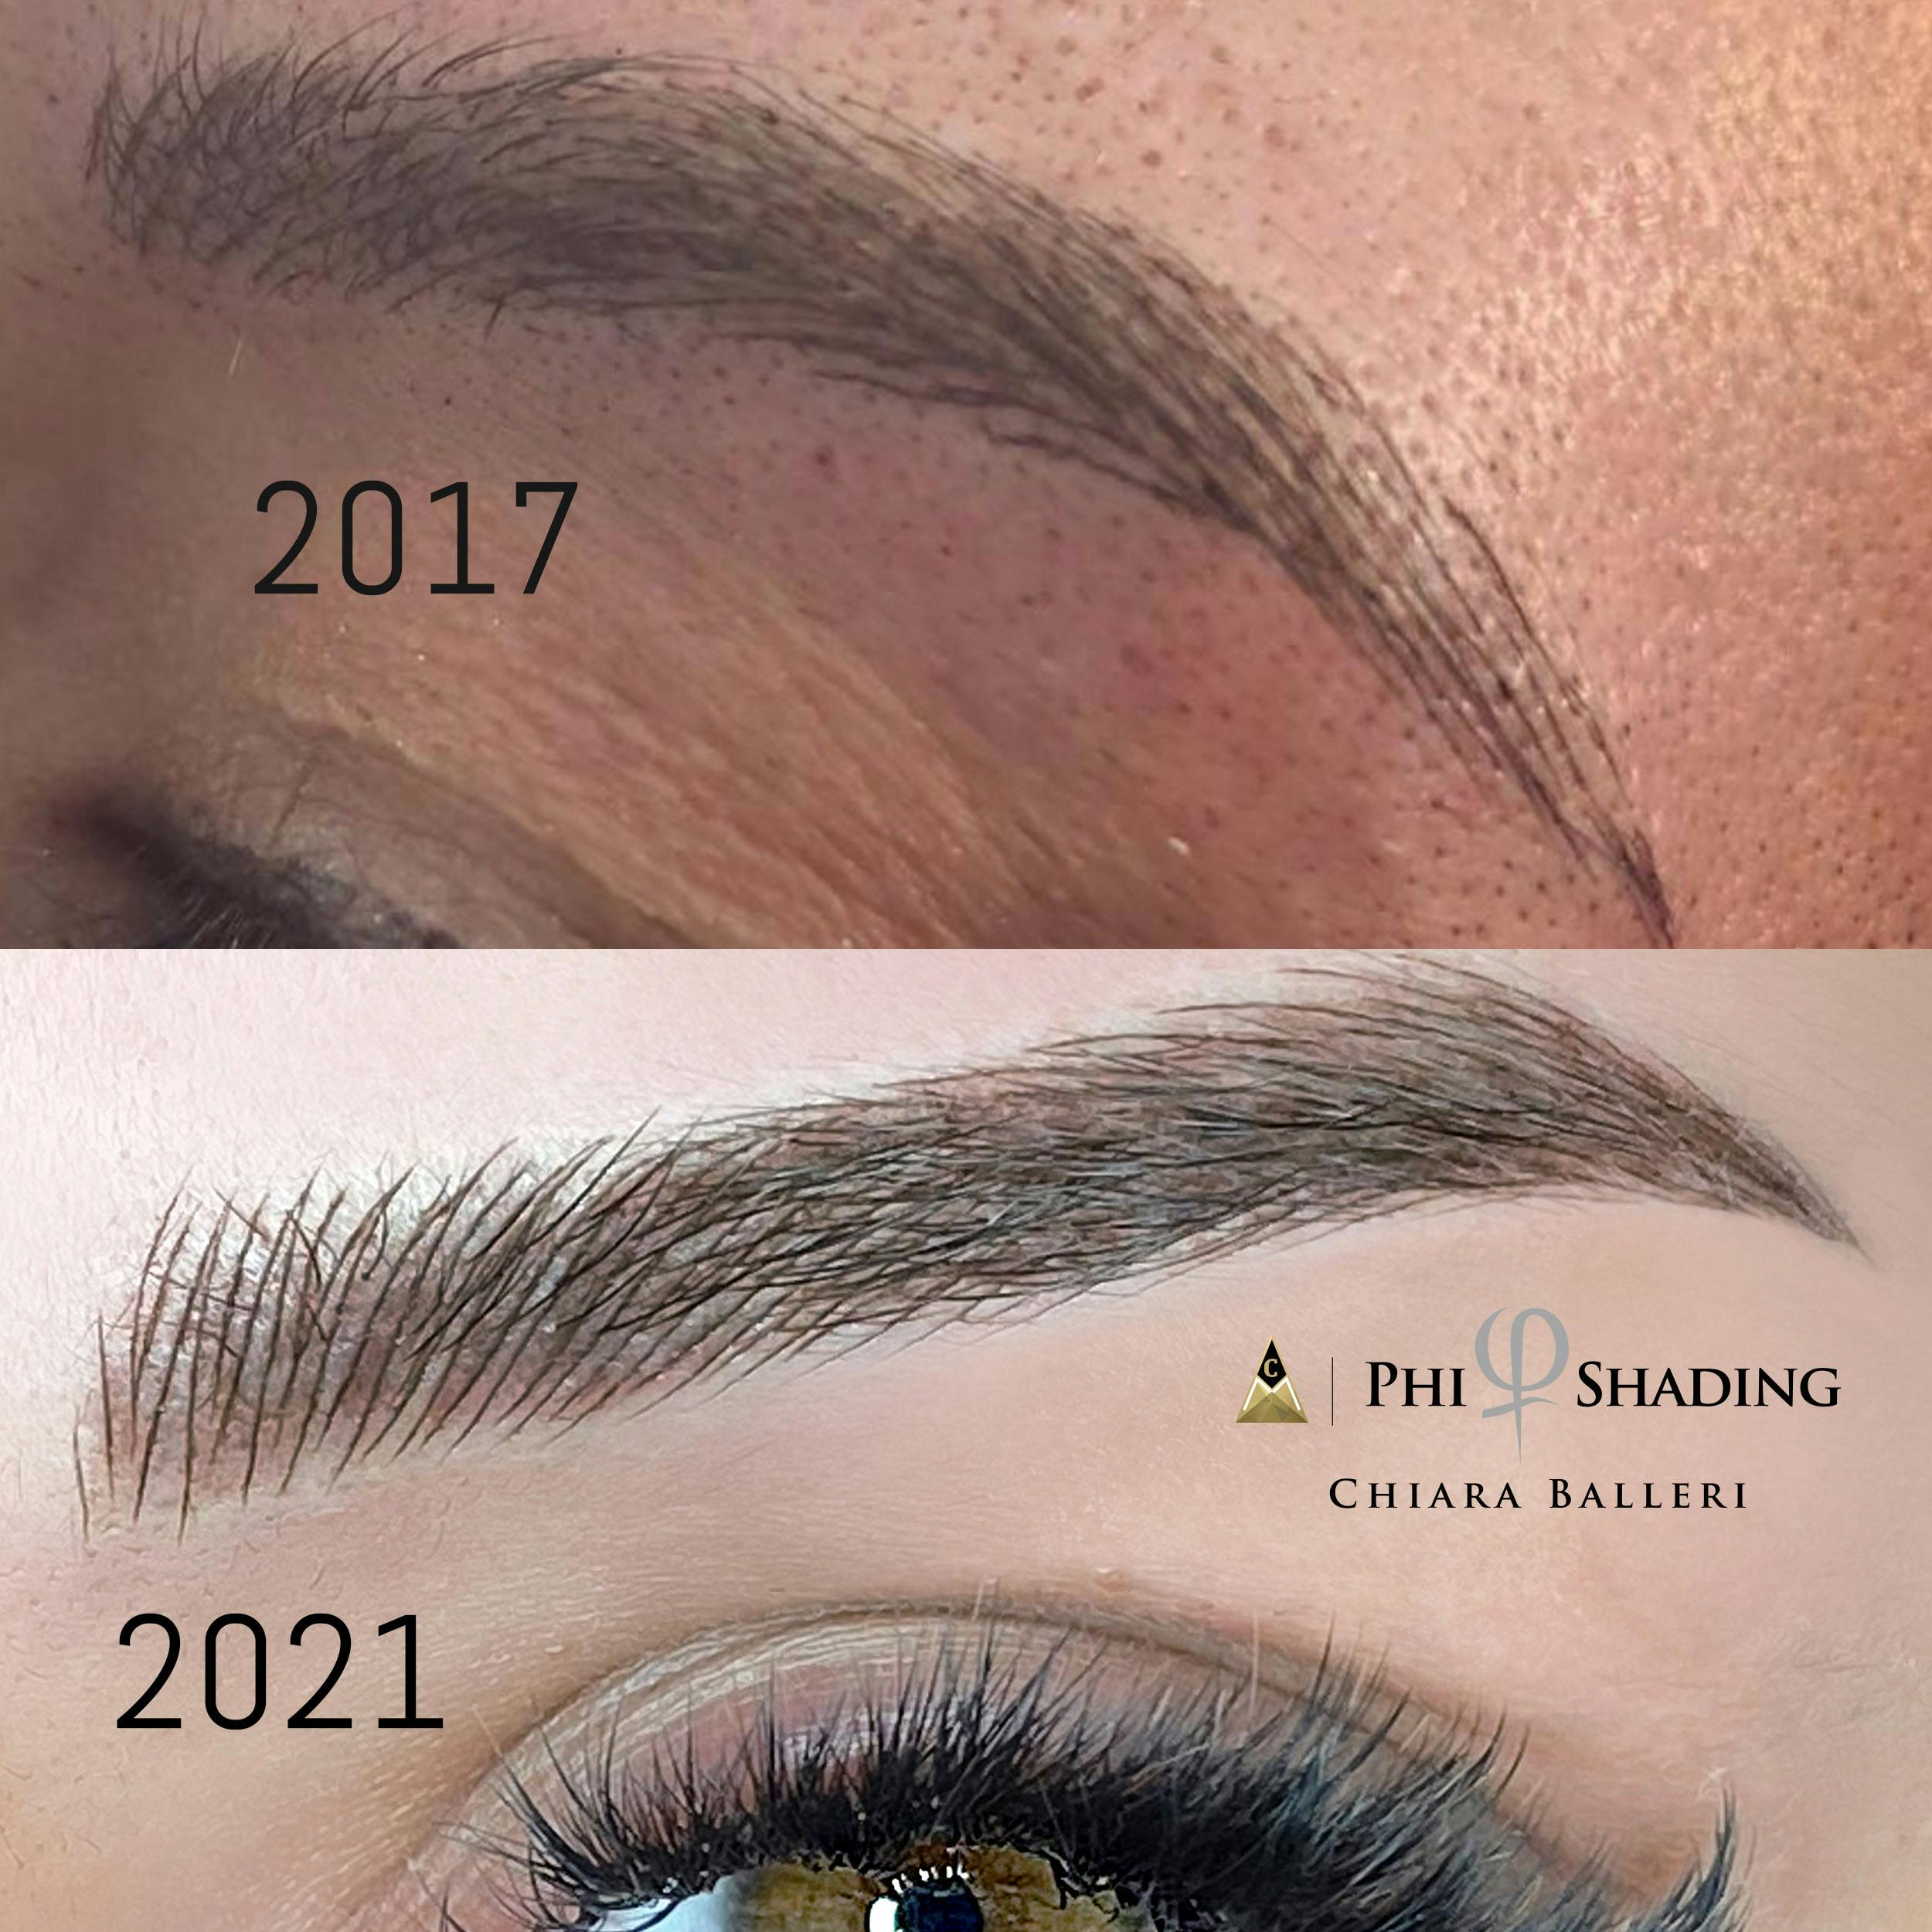 Chiara's amazing progress through years